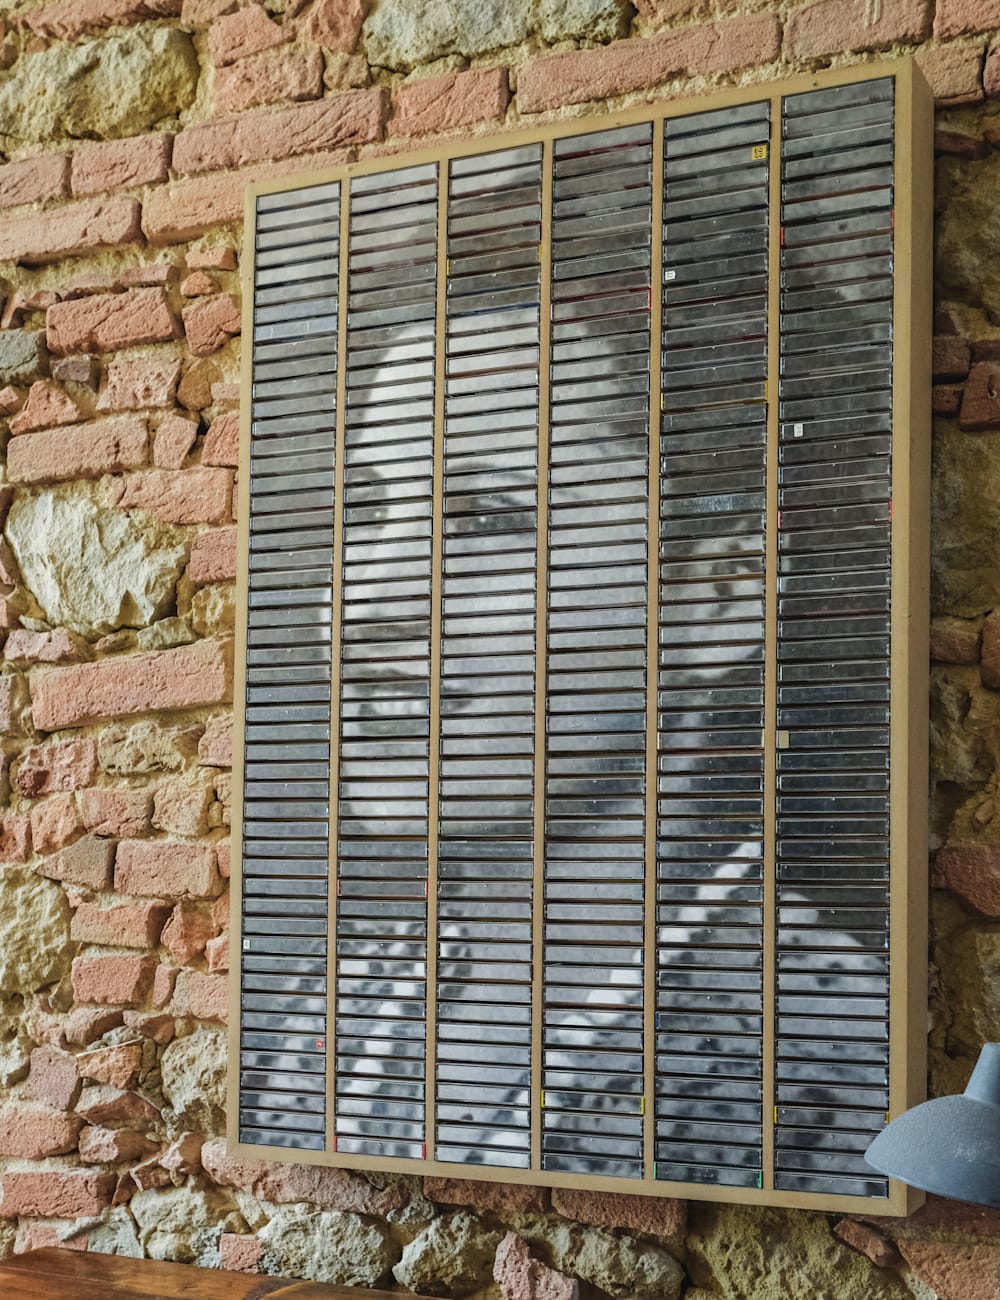 Artwork mounted on a brick wall at Villa Lena, Tuscany